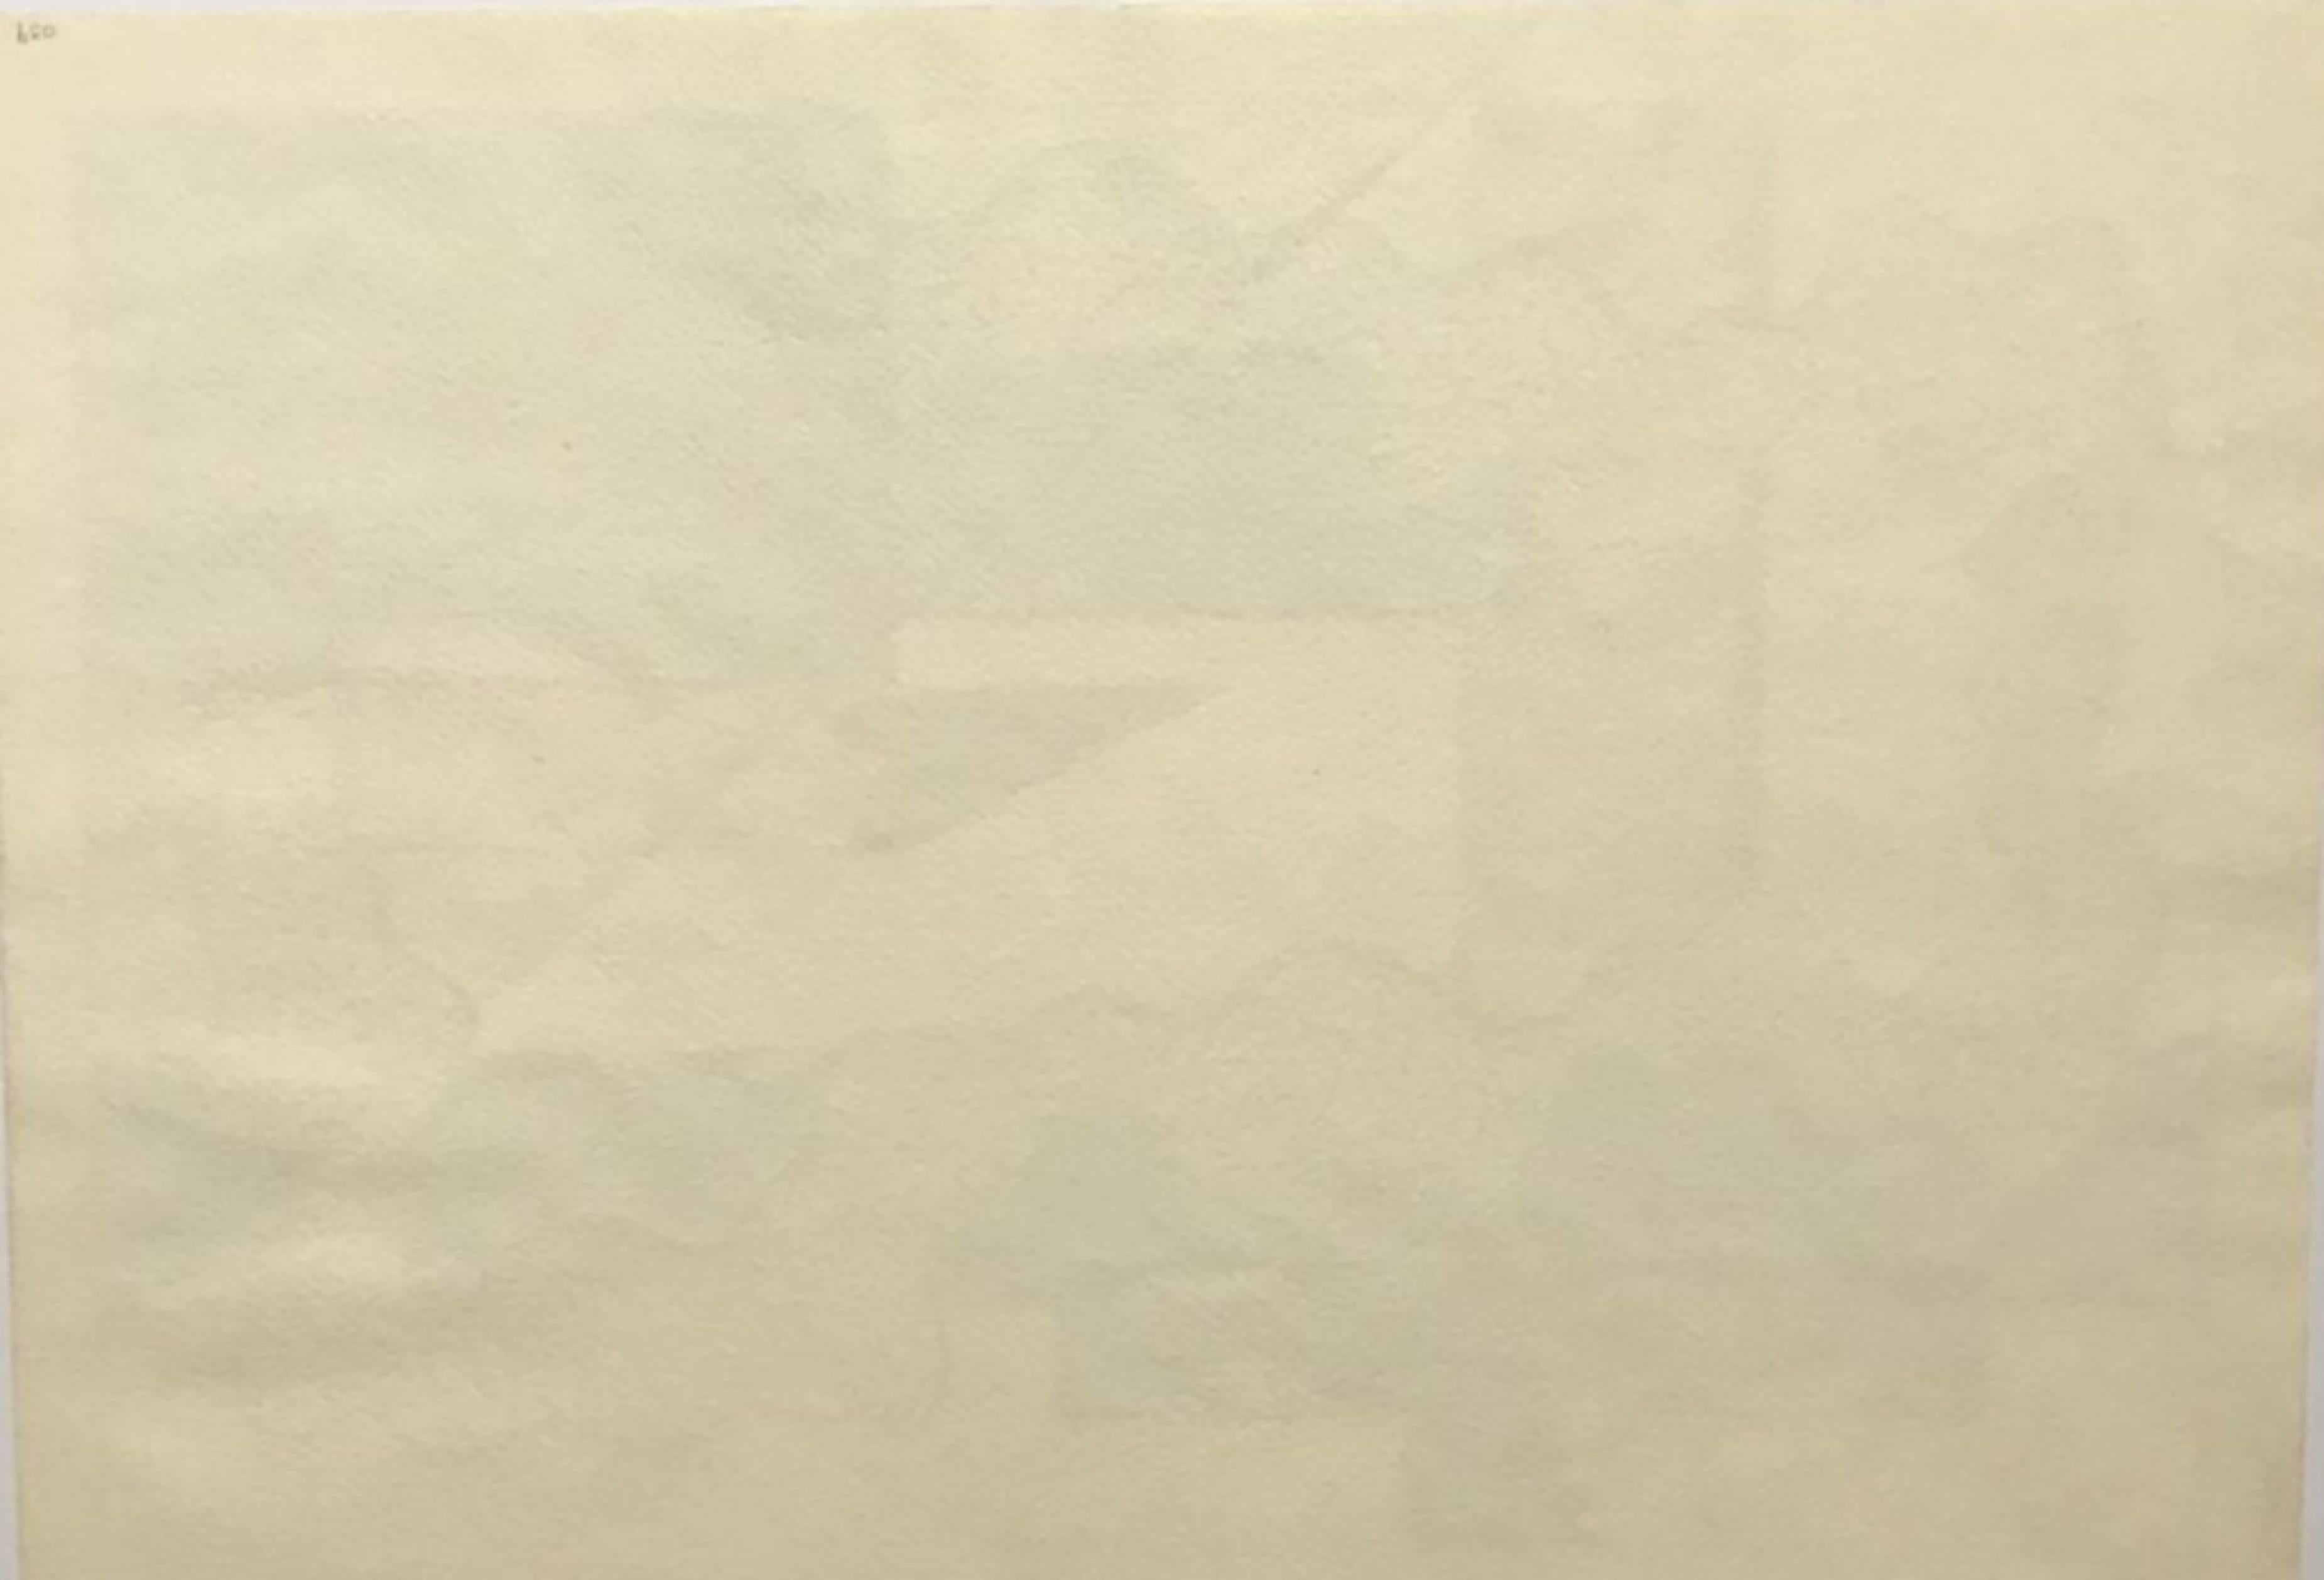 THOMAS BROWNELL ELDRED
Ohne Titel Moderne Abstraktion der Jahrhundertmitte, 1941
Gouache auf Papier
Handsigniert und datiert 1941 auf der Vorderseite
14 3/4 × 21 Zoll
Einzigartig
Provenienz: Erworben aus dem Nachlass von Thomas Brownell